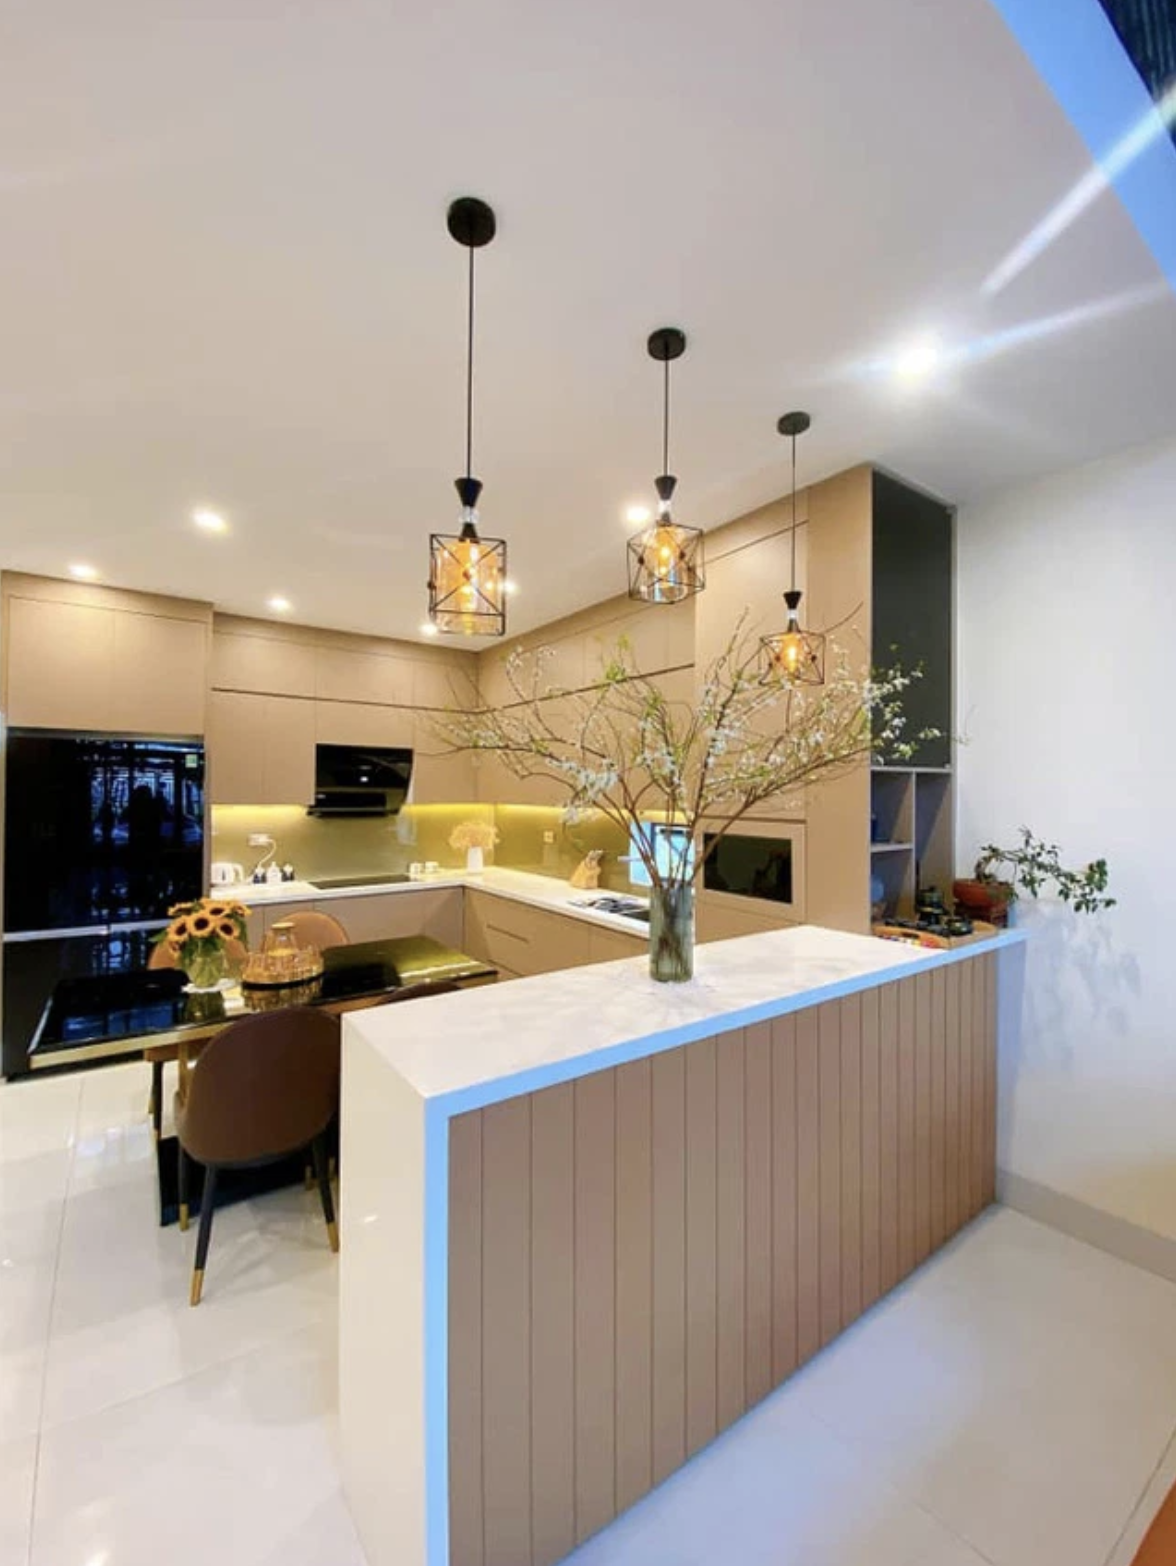 
Phòng bếp được thiết kế với nội thất có tông màu vàng ấm
